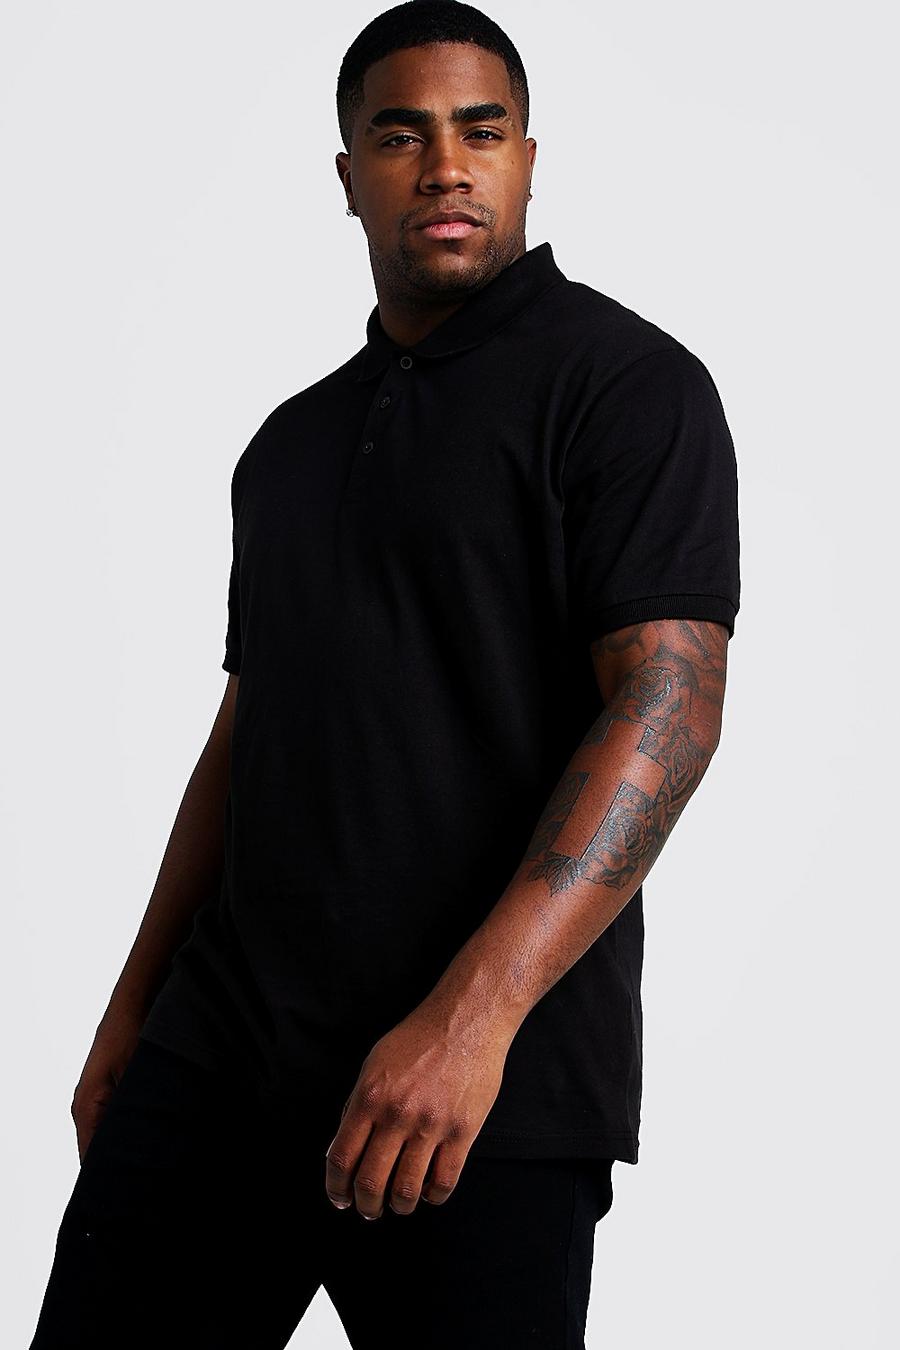 שחור nero חולצת פולו בייסיק קצרה לגברים גדולים וגבוהים